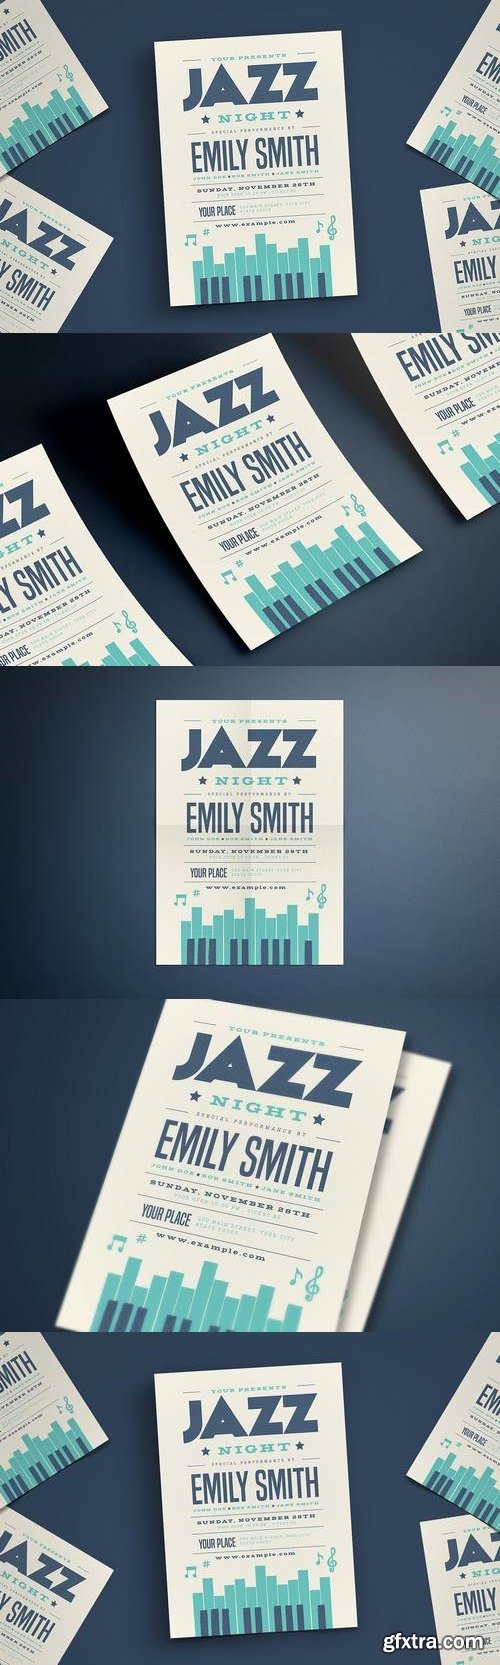 Jazz Piano Concert Flyer